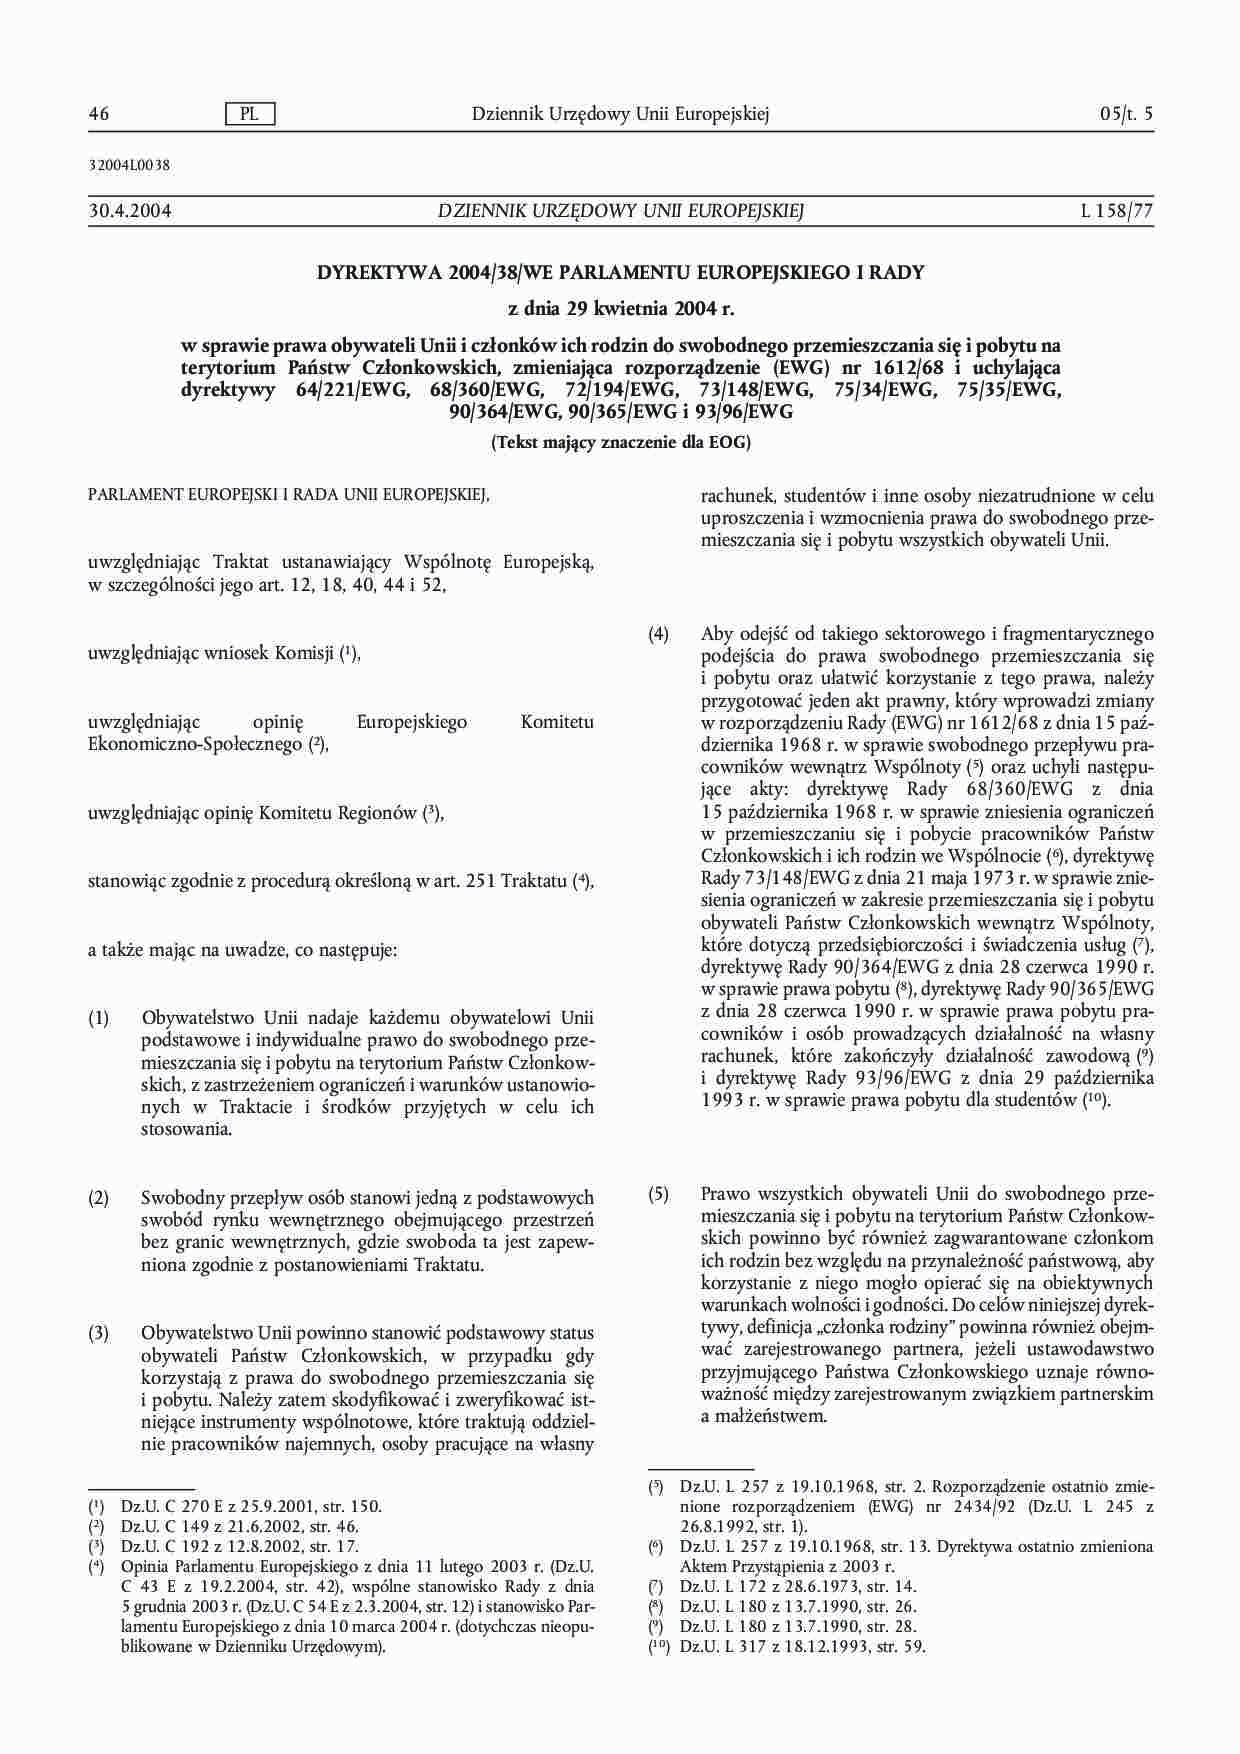 Dyrektywa 2004/38/WE Parlamentu Europejskiego i Rady - strona 1